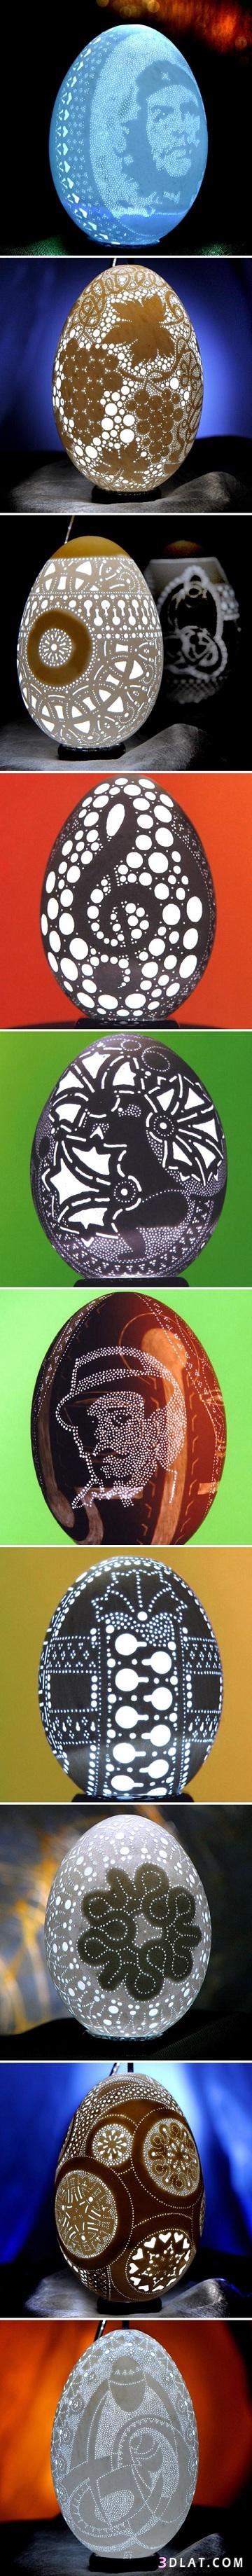 فنان سلوفيني يحول قشرة البيض الى تحفة فنية رائعة